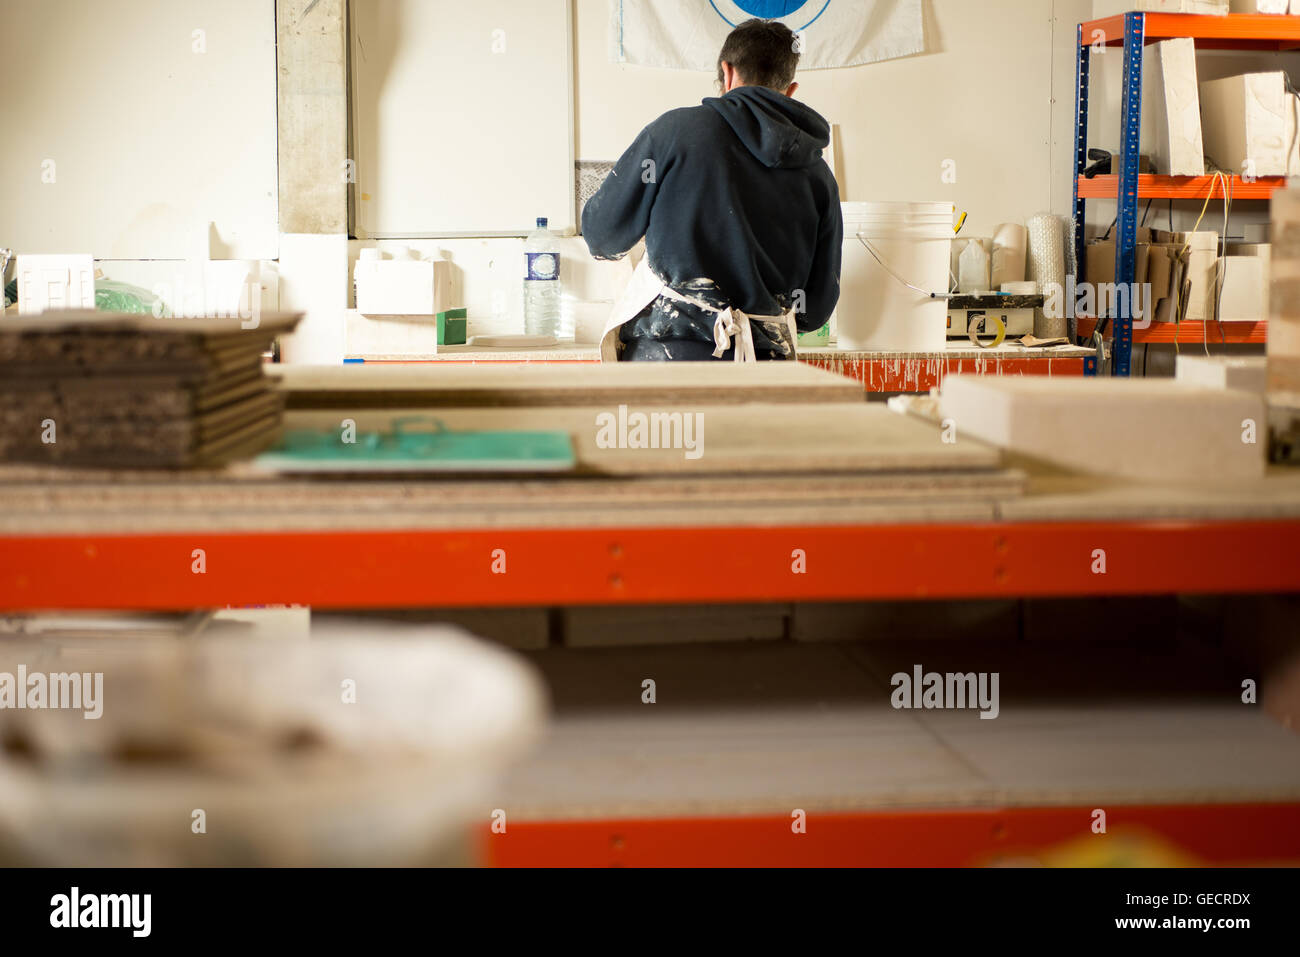 Ein Mann in Gips bespritzt-Kleidung mit Rücken drehte arbeiten durch eine  riesige Zeichentisch mit Gipsformen und Modelle Stockfotografie - Alamy